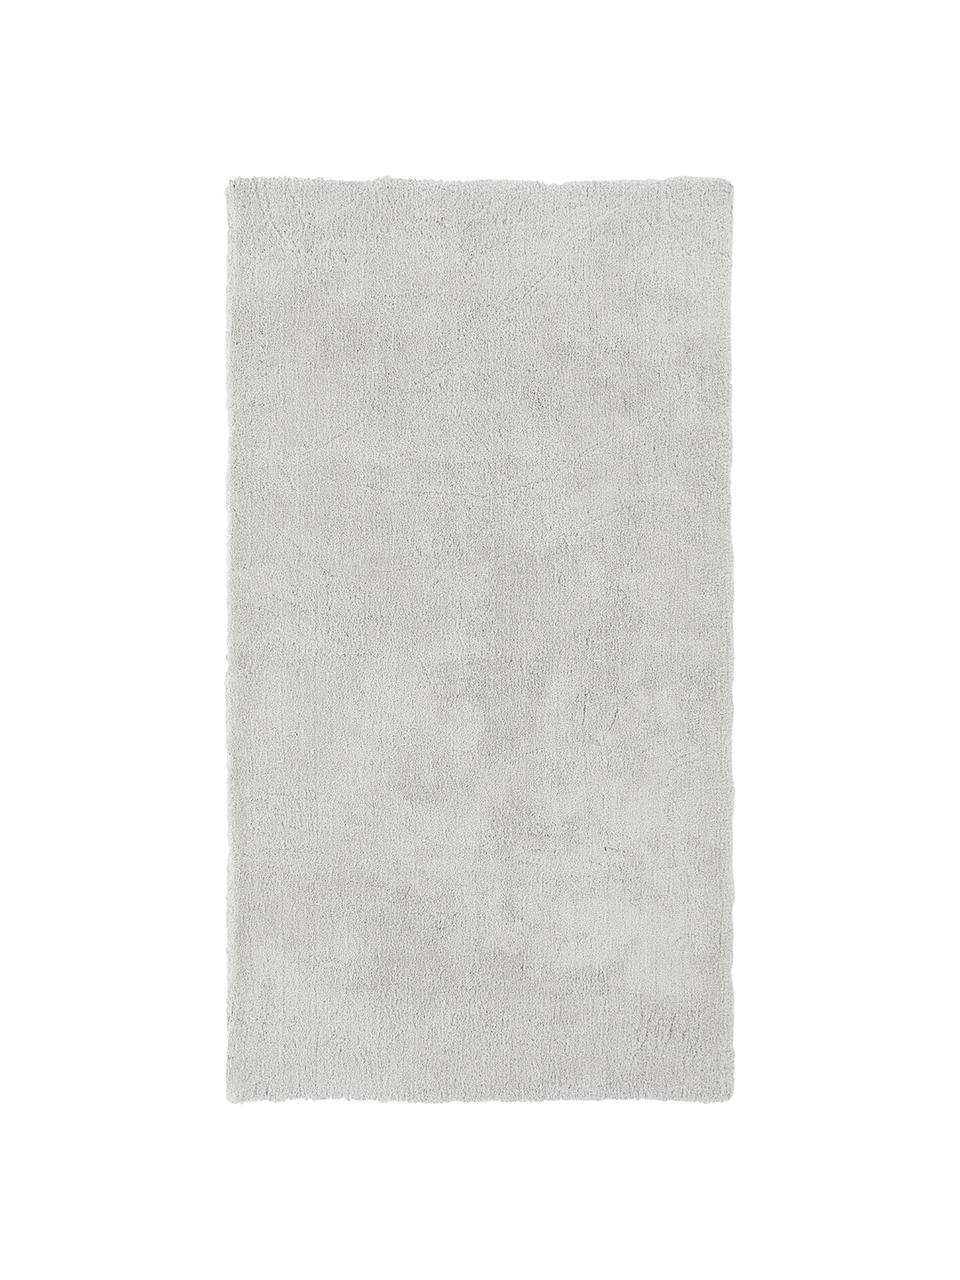 Puszysty dywan z wysokim stosem Leighton, Mikrofibra, Jasny szarobeżowy, S 400 x D 500 cm